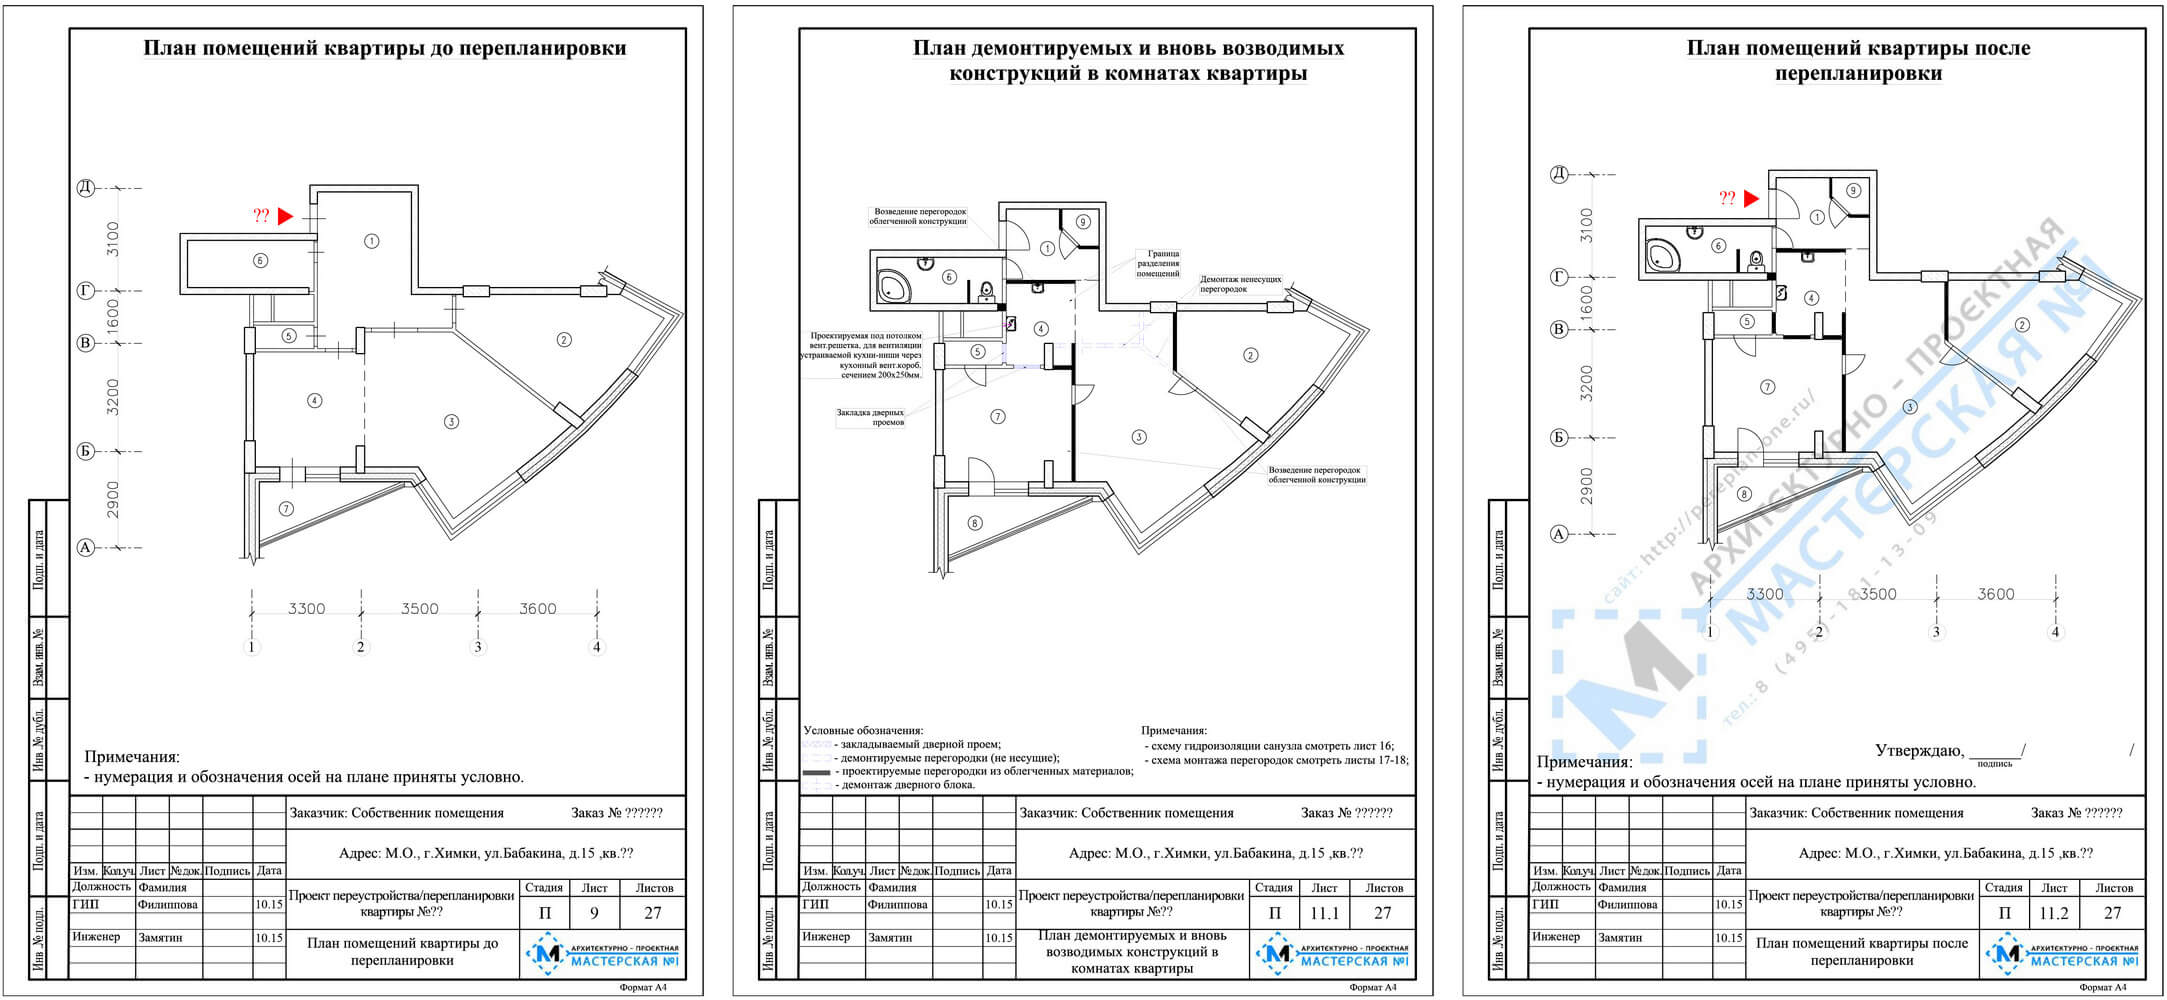 План квартиры до и после перепланировки, экспликации, а также план с указанием всех работ и их месте проведения